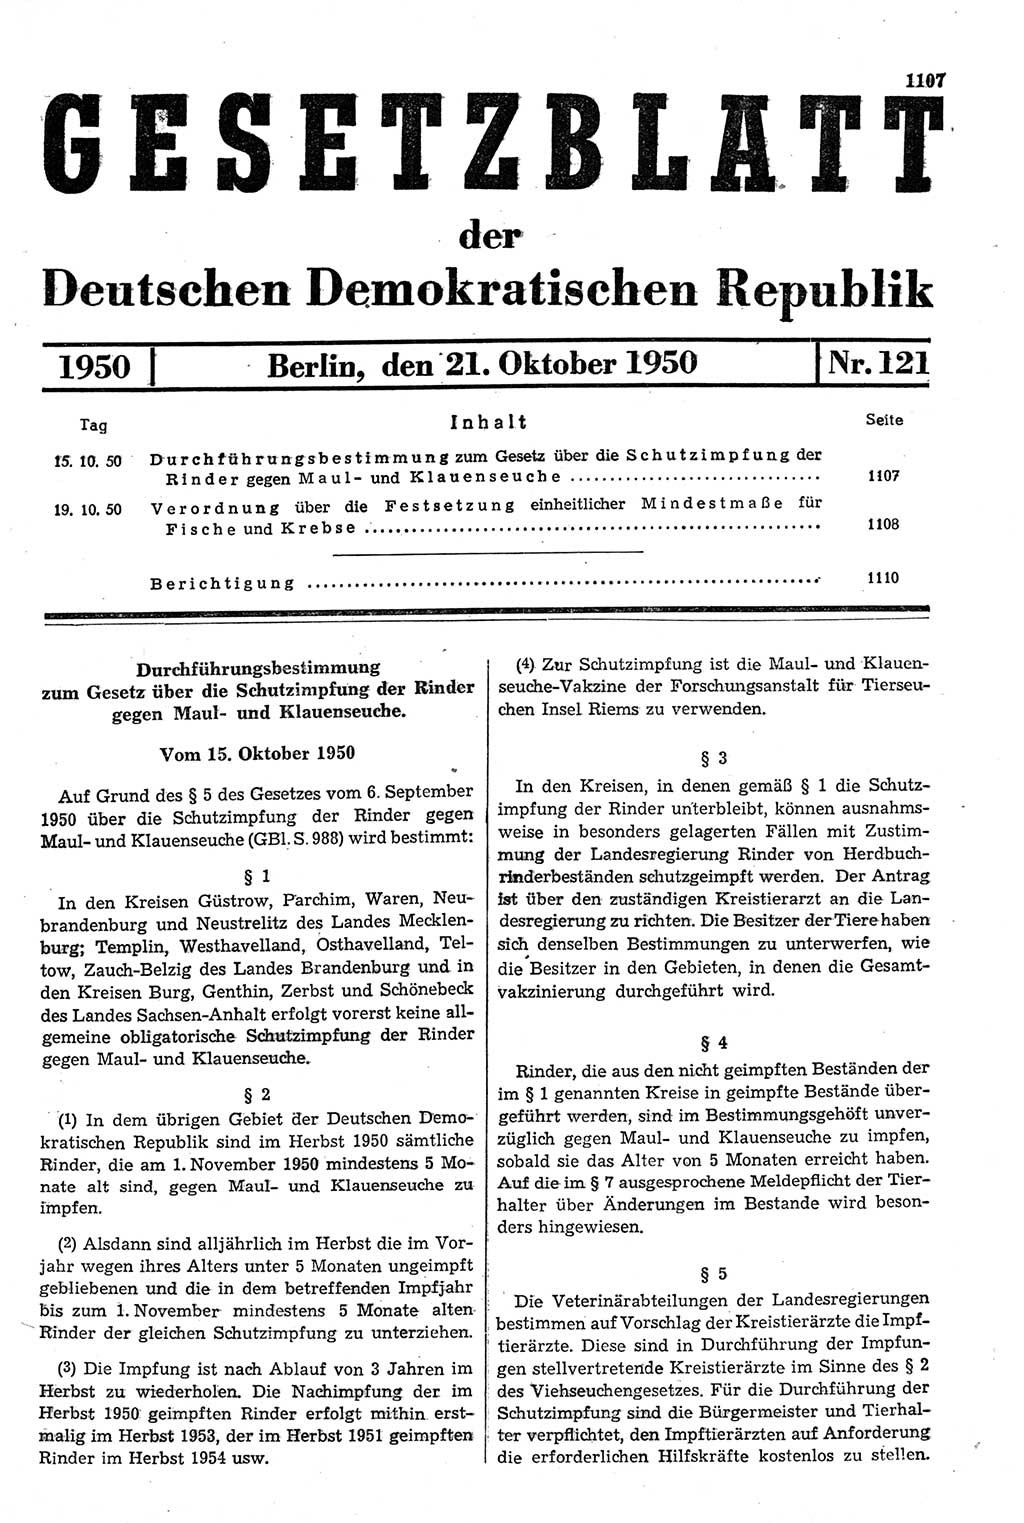 Gesetzblatt (GBl.) der Deutschen Demokratischen Republik (DDR) 1950, Seite 1107 (GBl. DDR 1950, S. 1107)